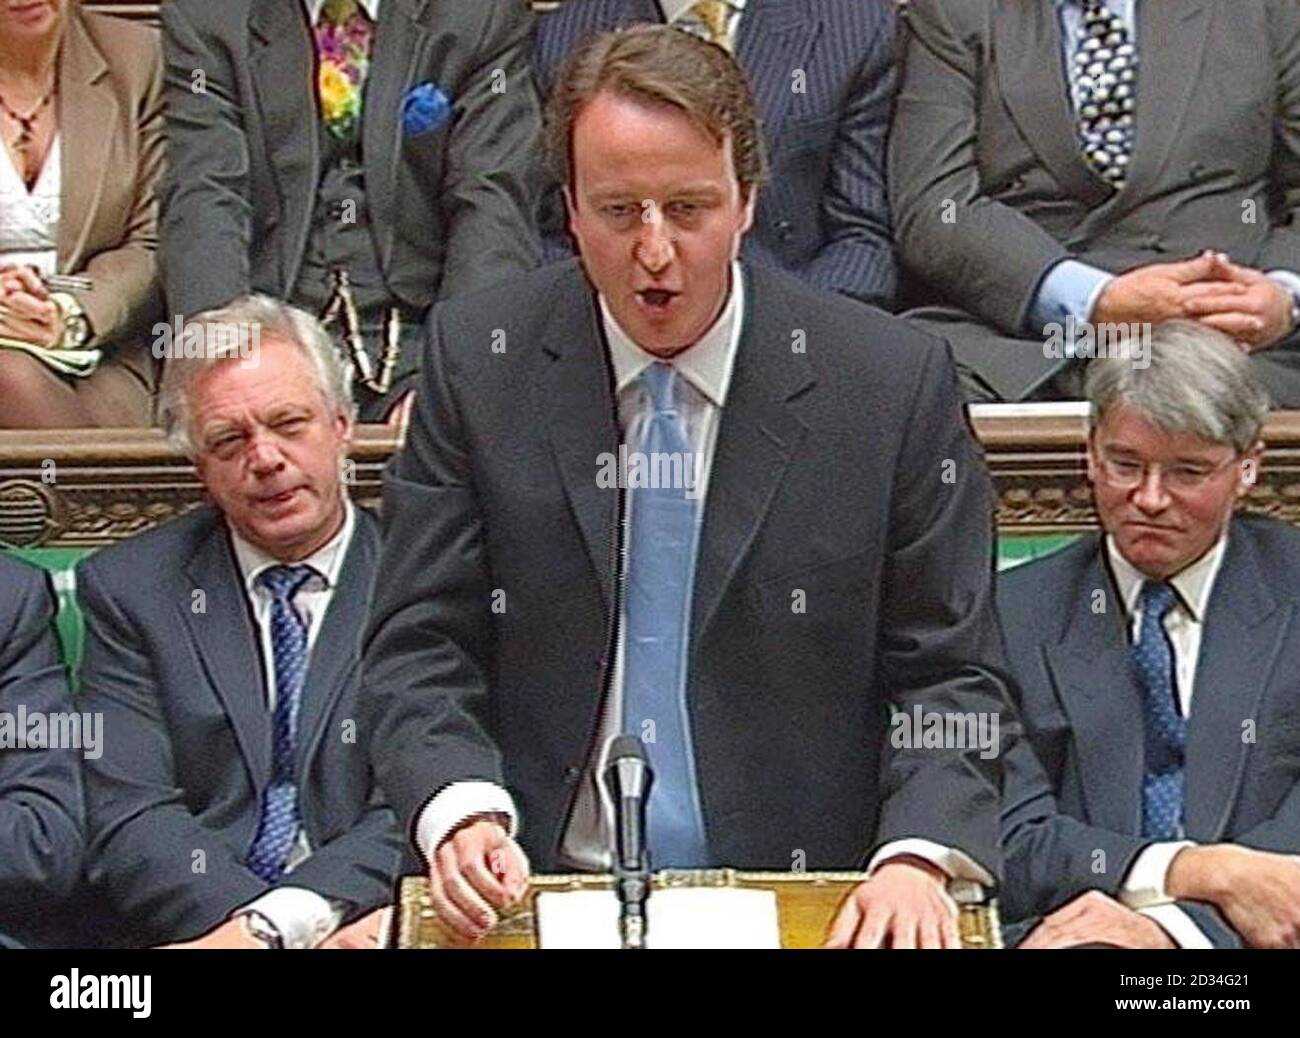 David Cameron, il nuovo leader conservatore durante il suo primo tempo delle interrogazioni alla Camera dei Comuni, Londra, mercoledì 7 dicembre 2005. PREMERE ASSOCIAZIONE foto. Il credito fotografico dovrebbe essere: PA Foto Stock